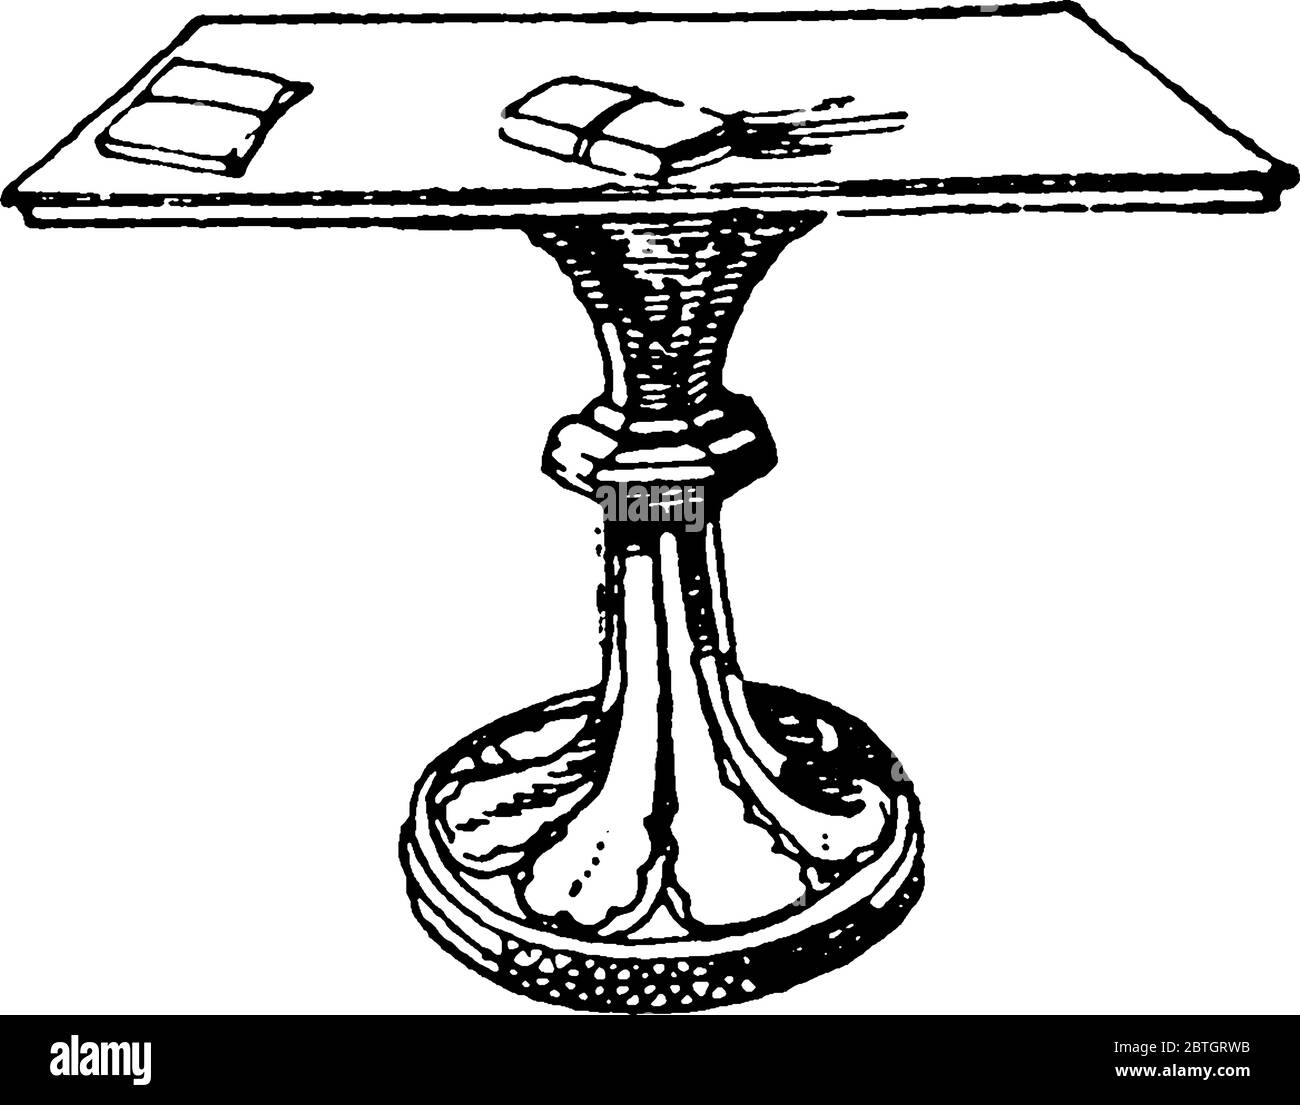 Ein Tischbein dient als Stütze, die entweder am Boden befestigt wurde oder das untere Ende ist ausgebreitet, so dass der Tisch fest stehen kann, Vin Stock Vektor